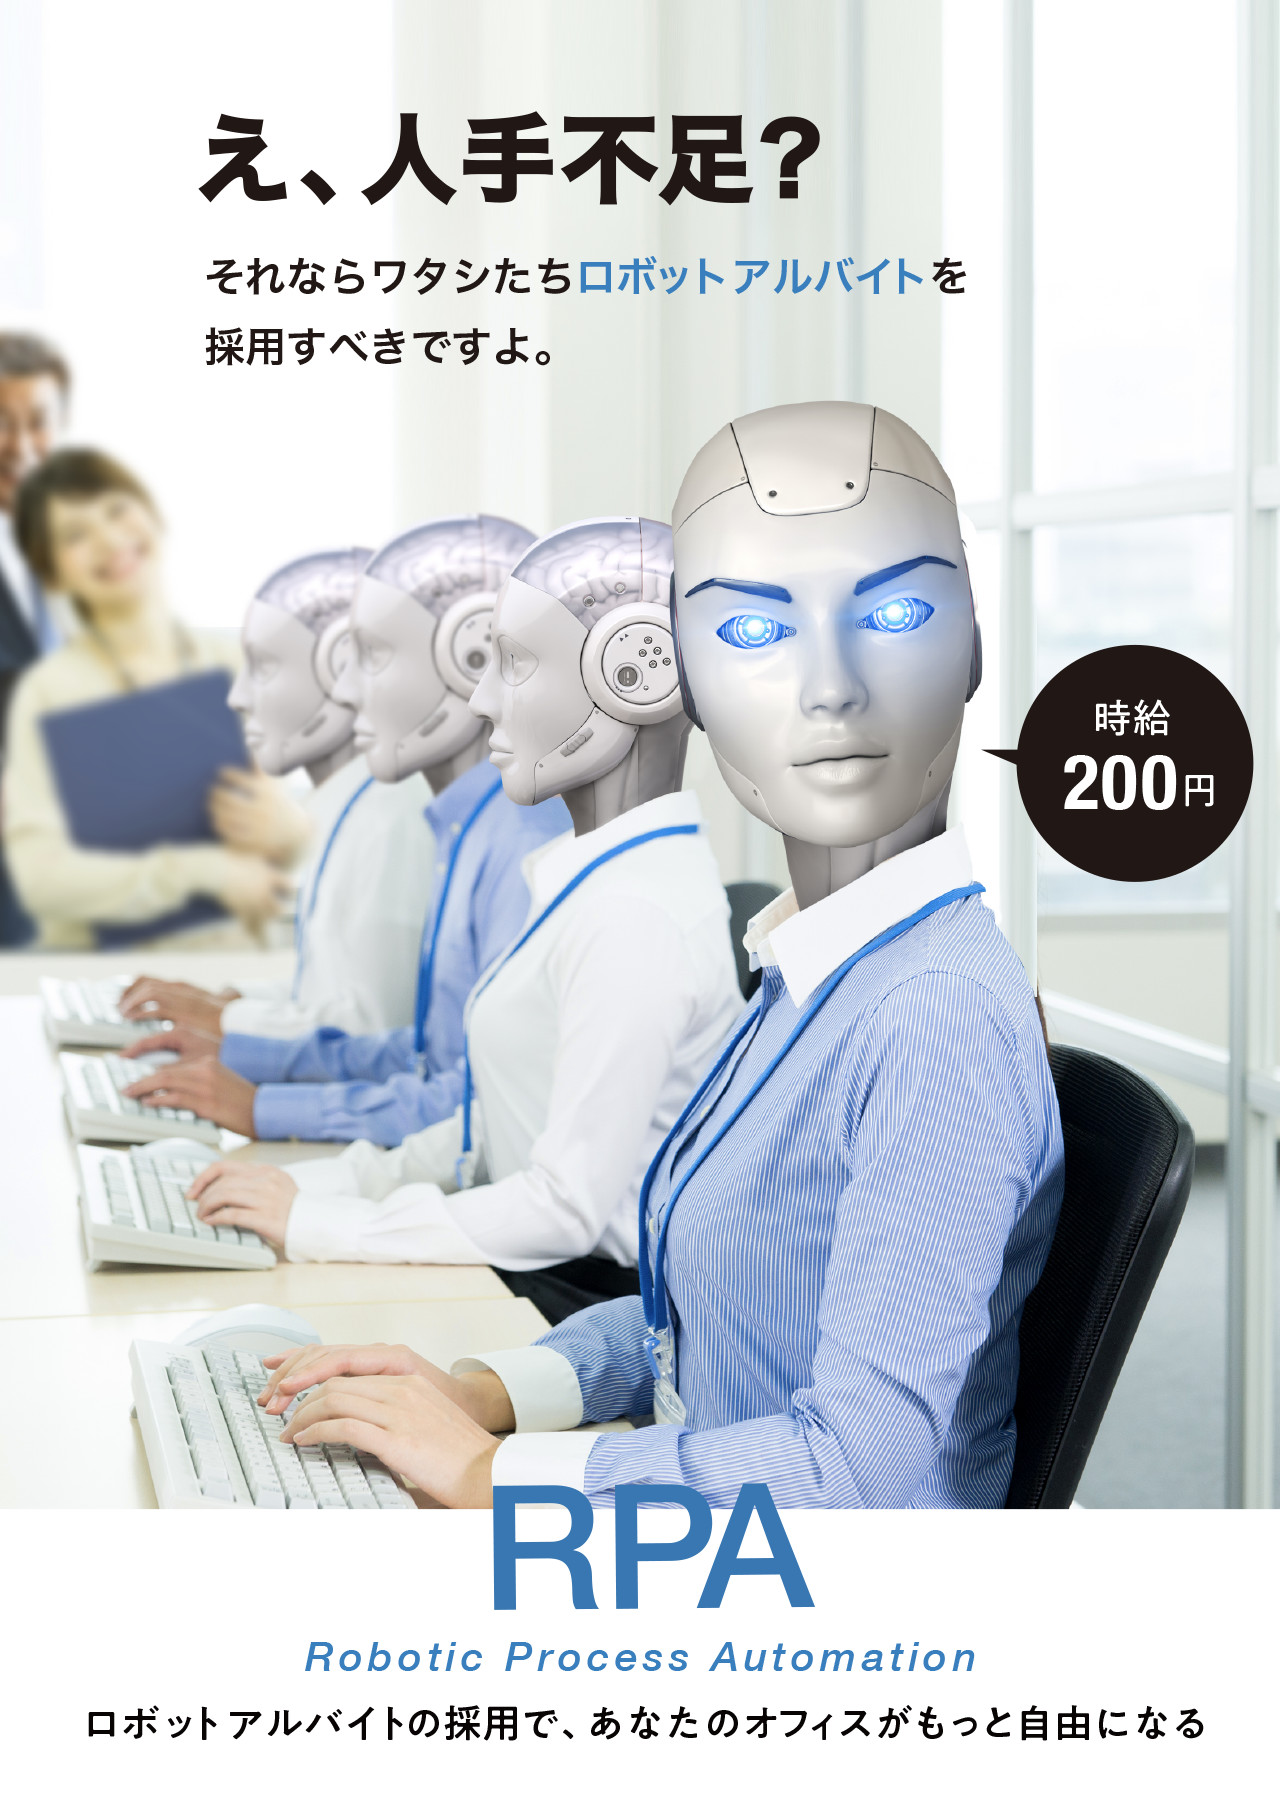 ロボットアルバイト派遣サービス Rpa導入支援 を開始いたします 株式会社副社長ブログ